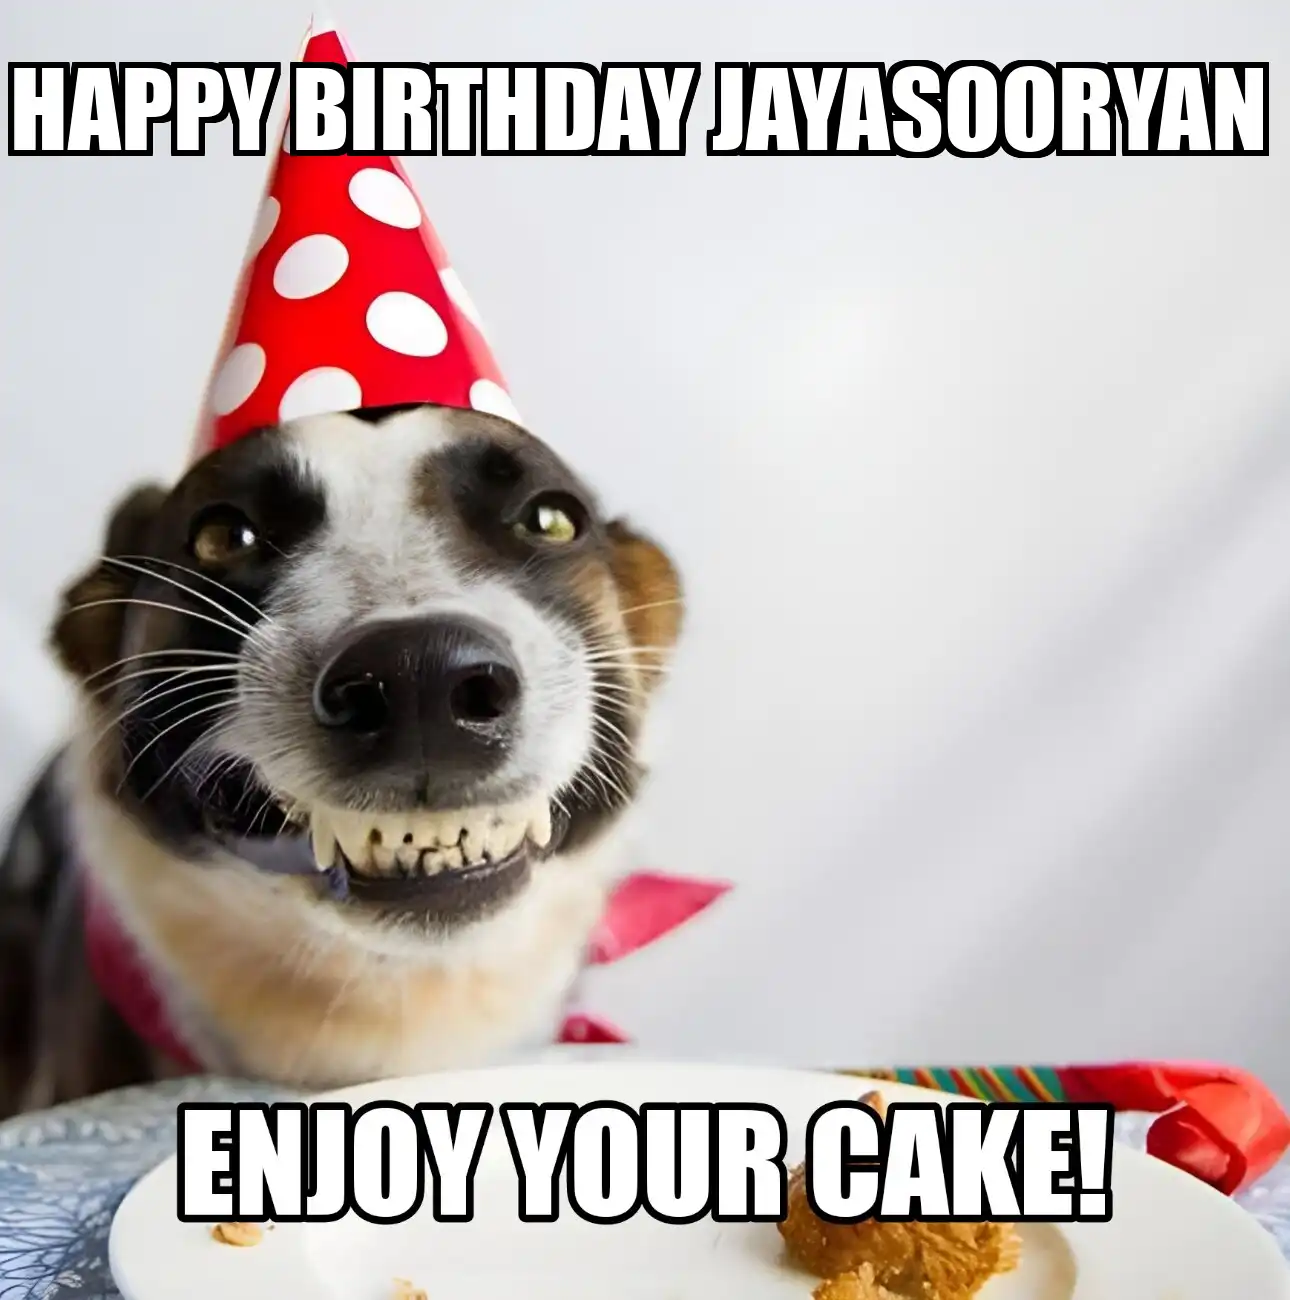 Happy Birthday Jayasooryan Enjoy Your Cake Dog Meme